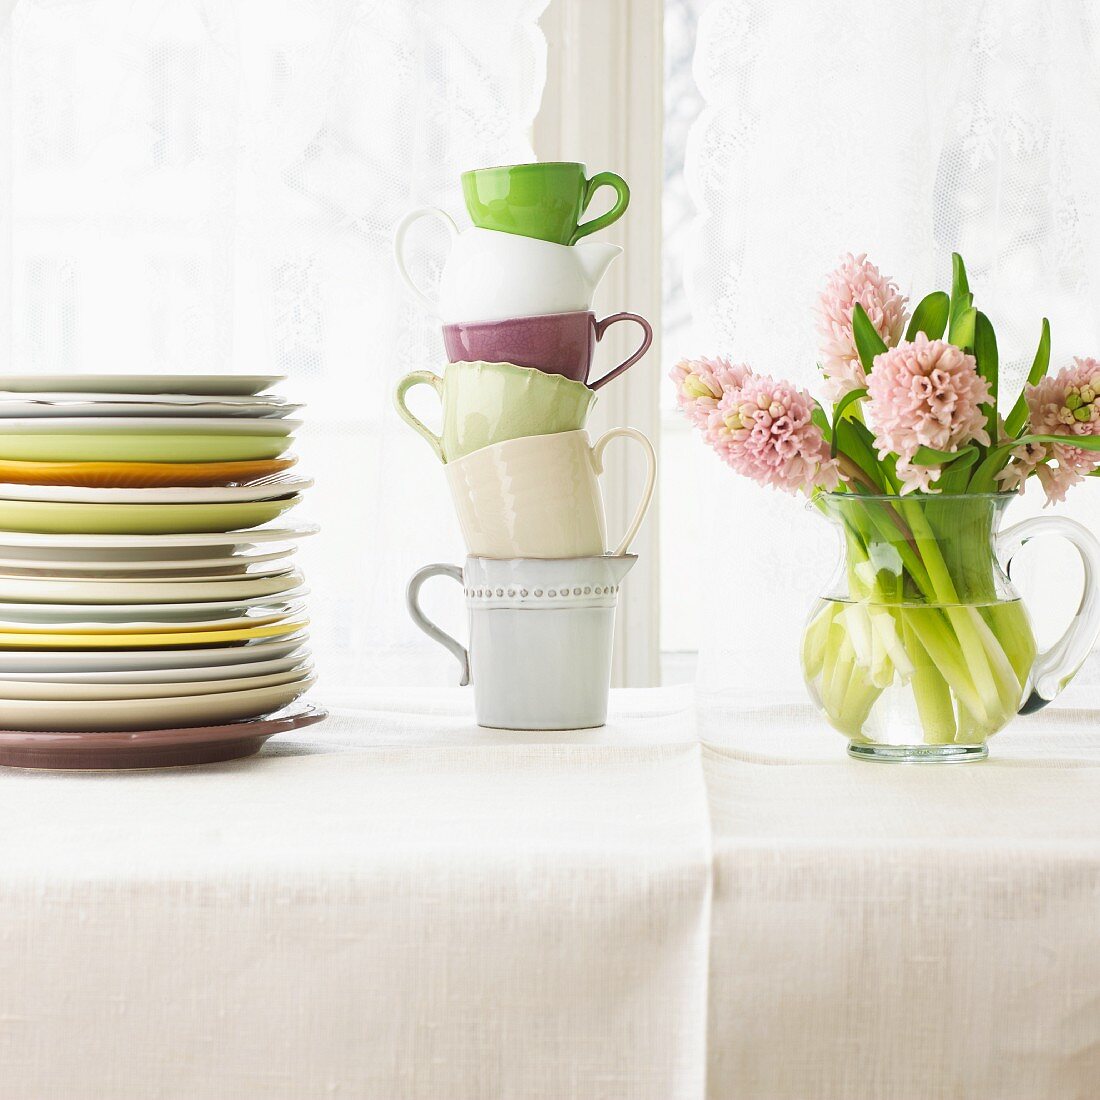 Tellerstapel, Tassenstapel und Blumenstrauss auf weiss gedecktem Tisch